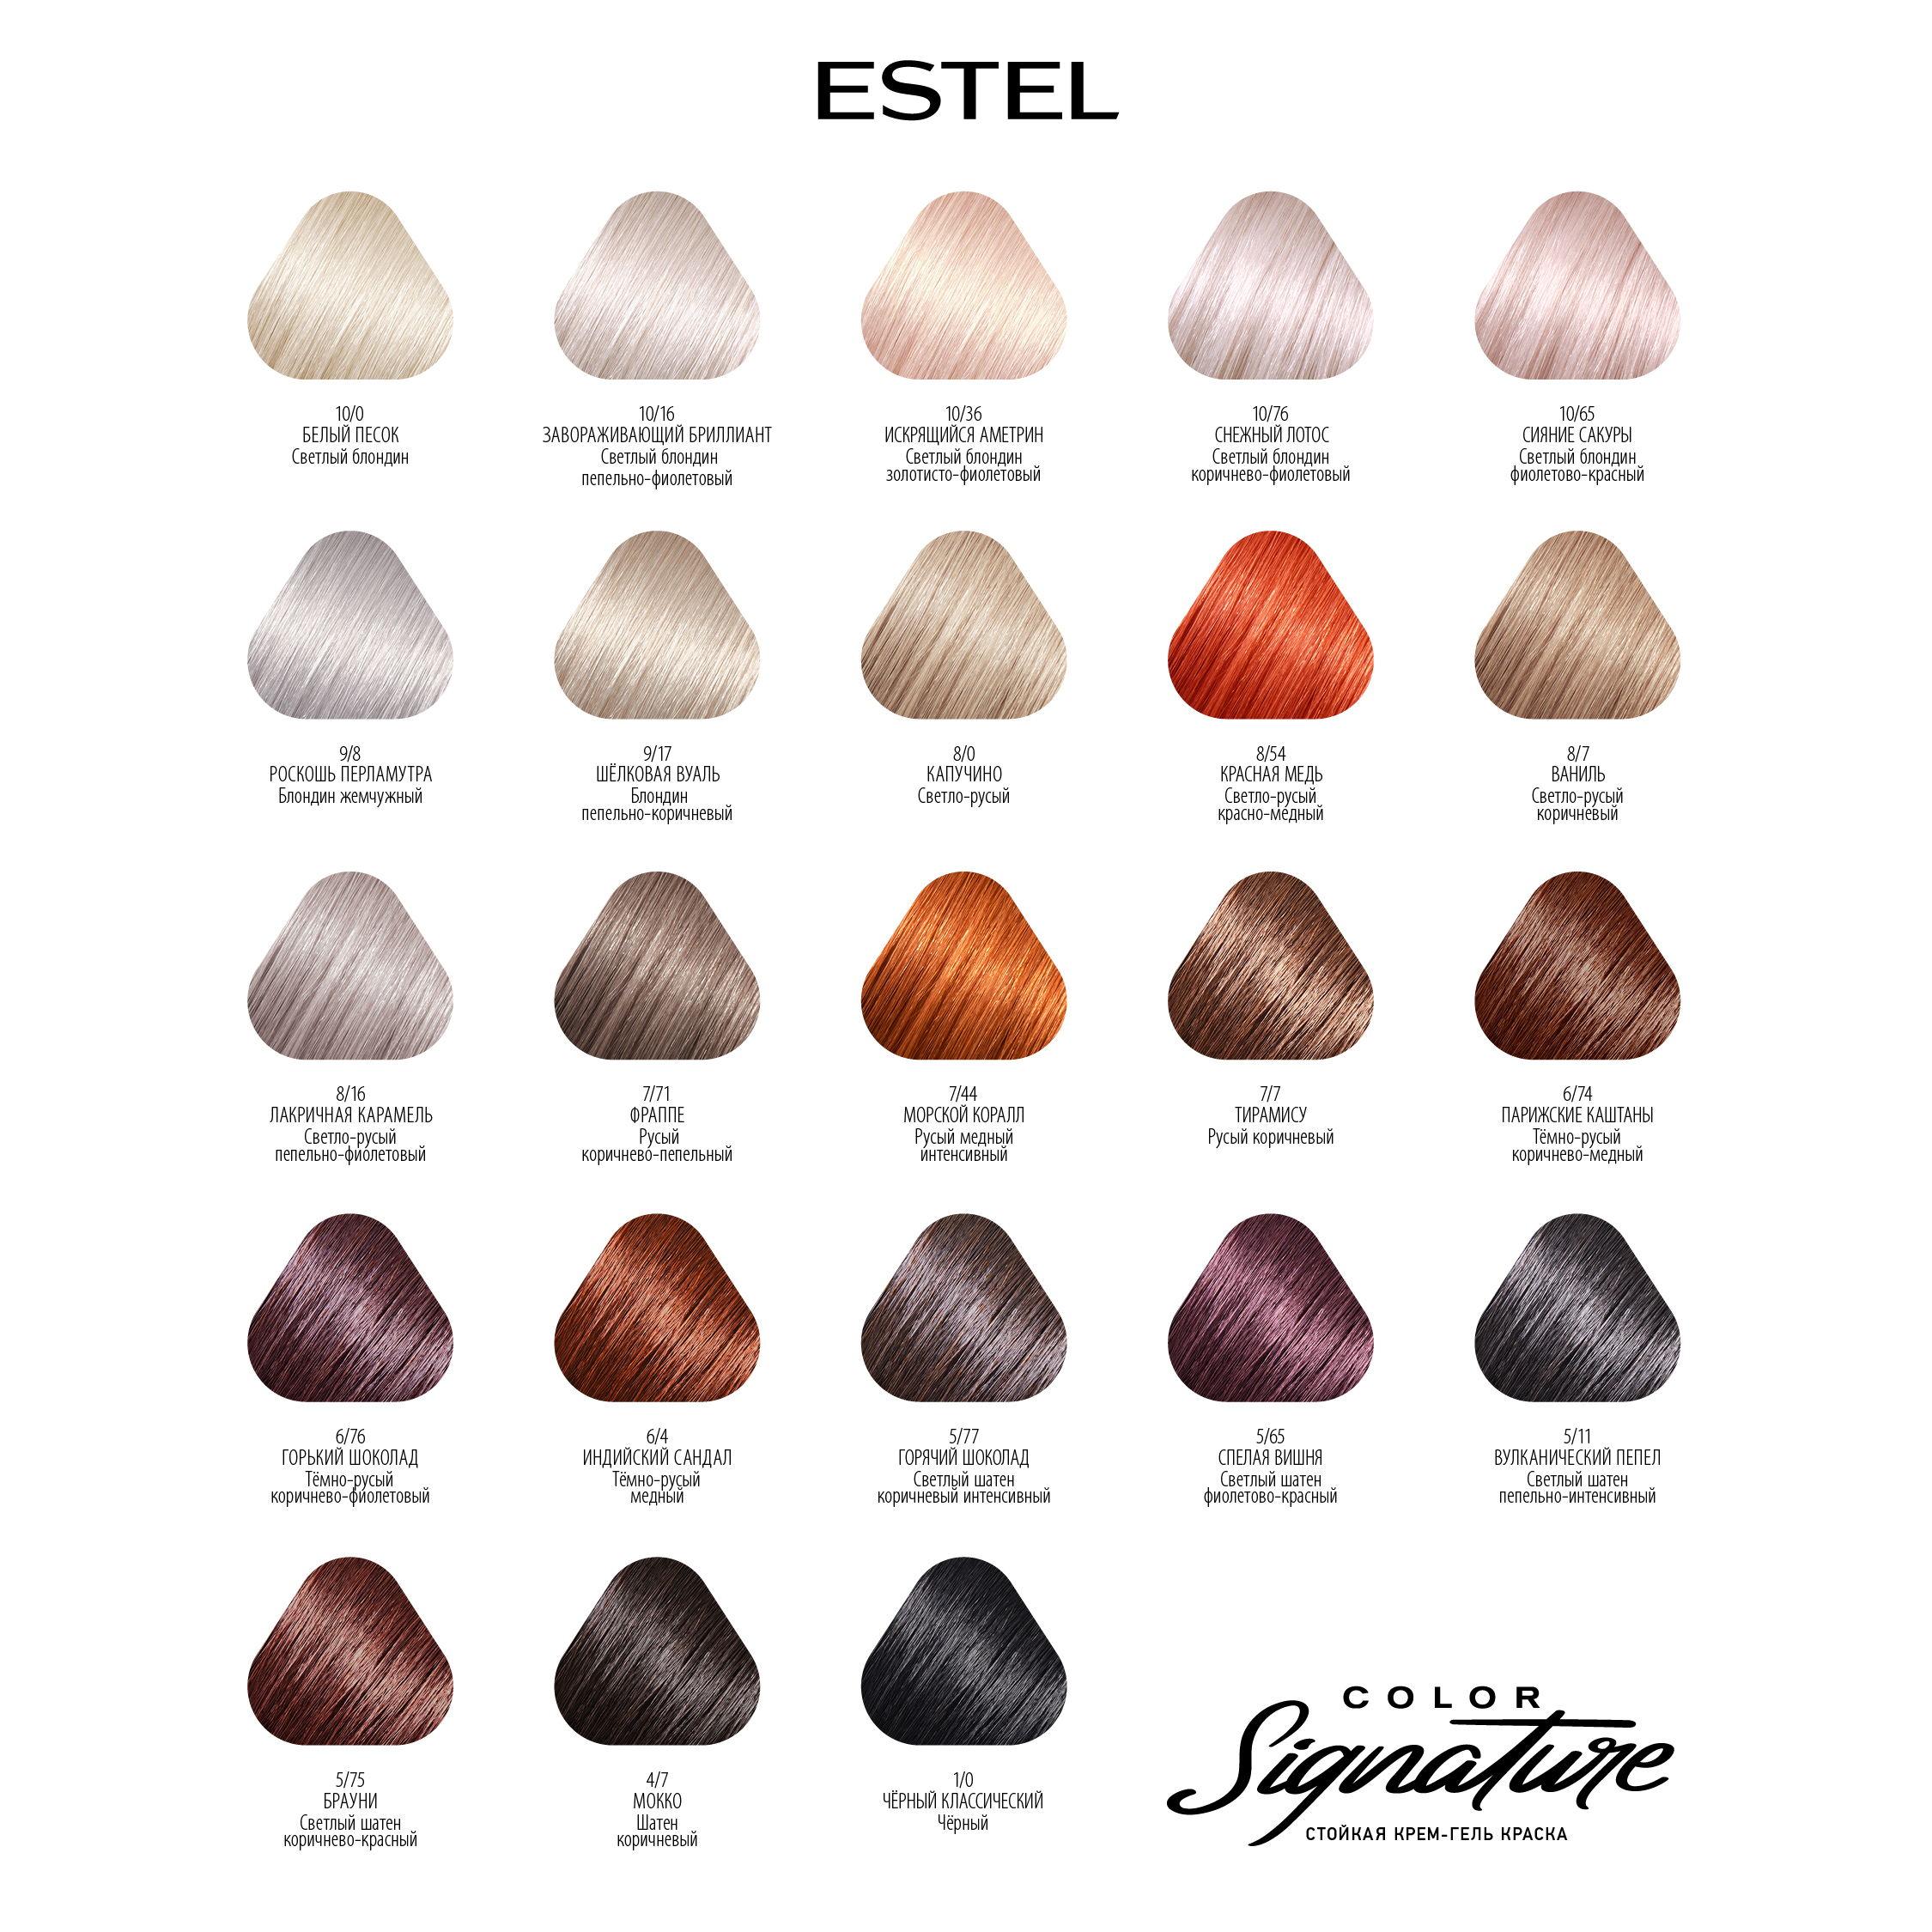 Краска для волос Estel Color Signature тон 10.65 сияние сакуры - в интернет-магазине TUT-BEAUTY.BY с доставкой.